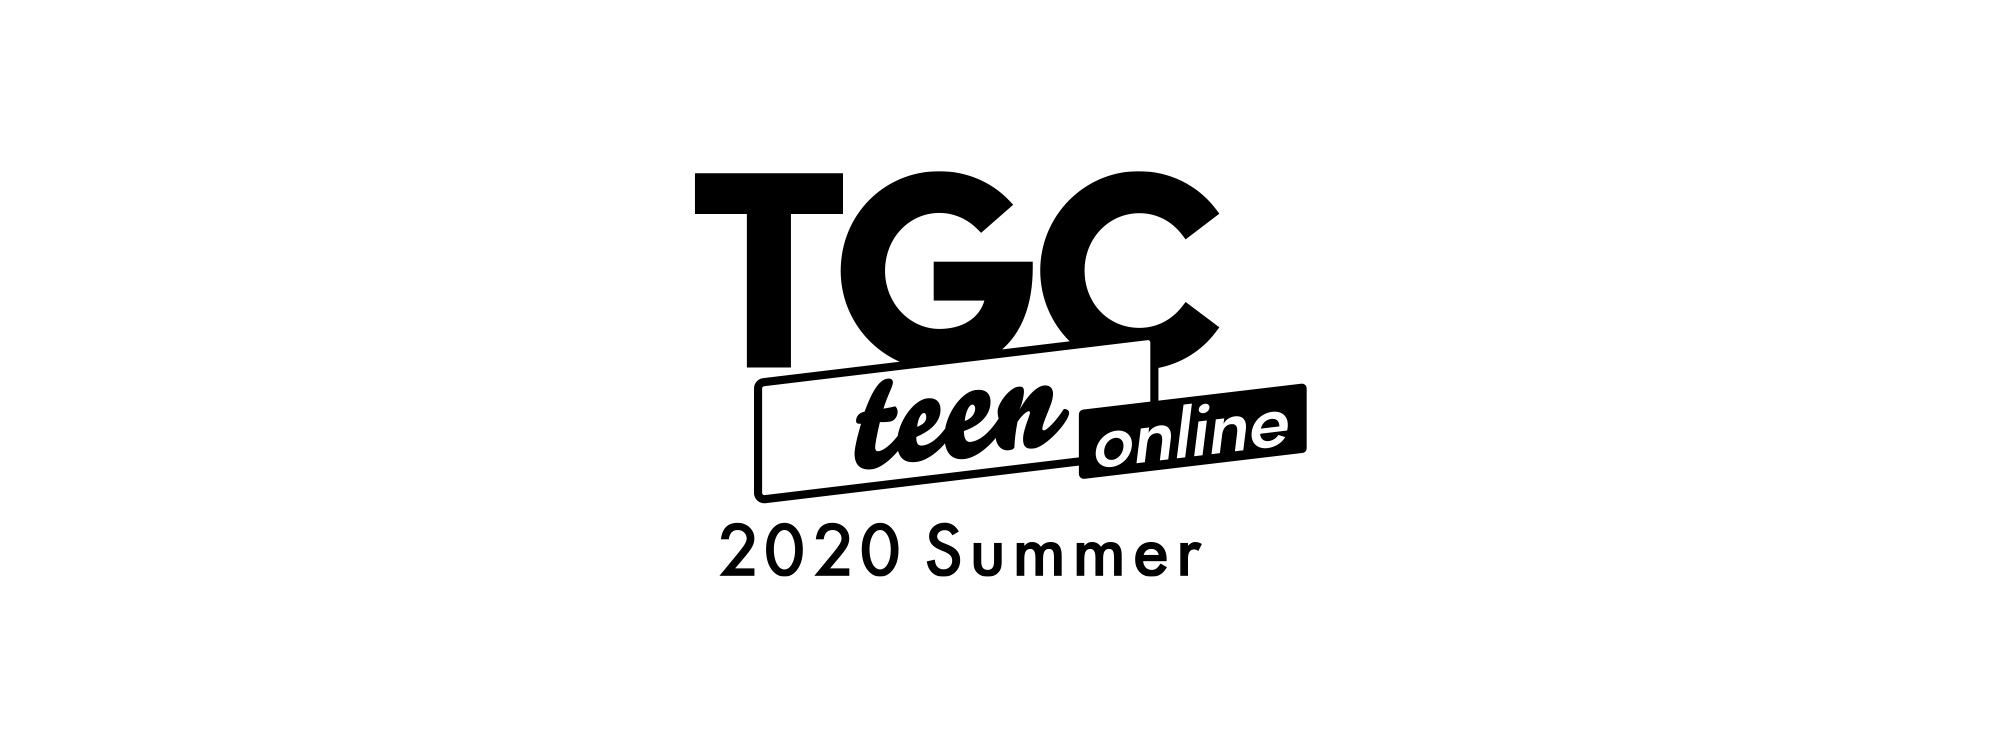 tgc teen 2020 summer logo